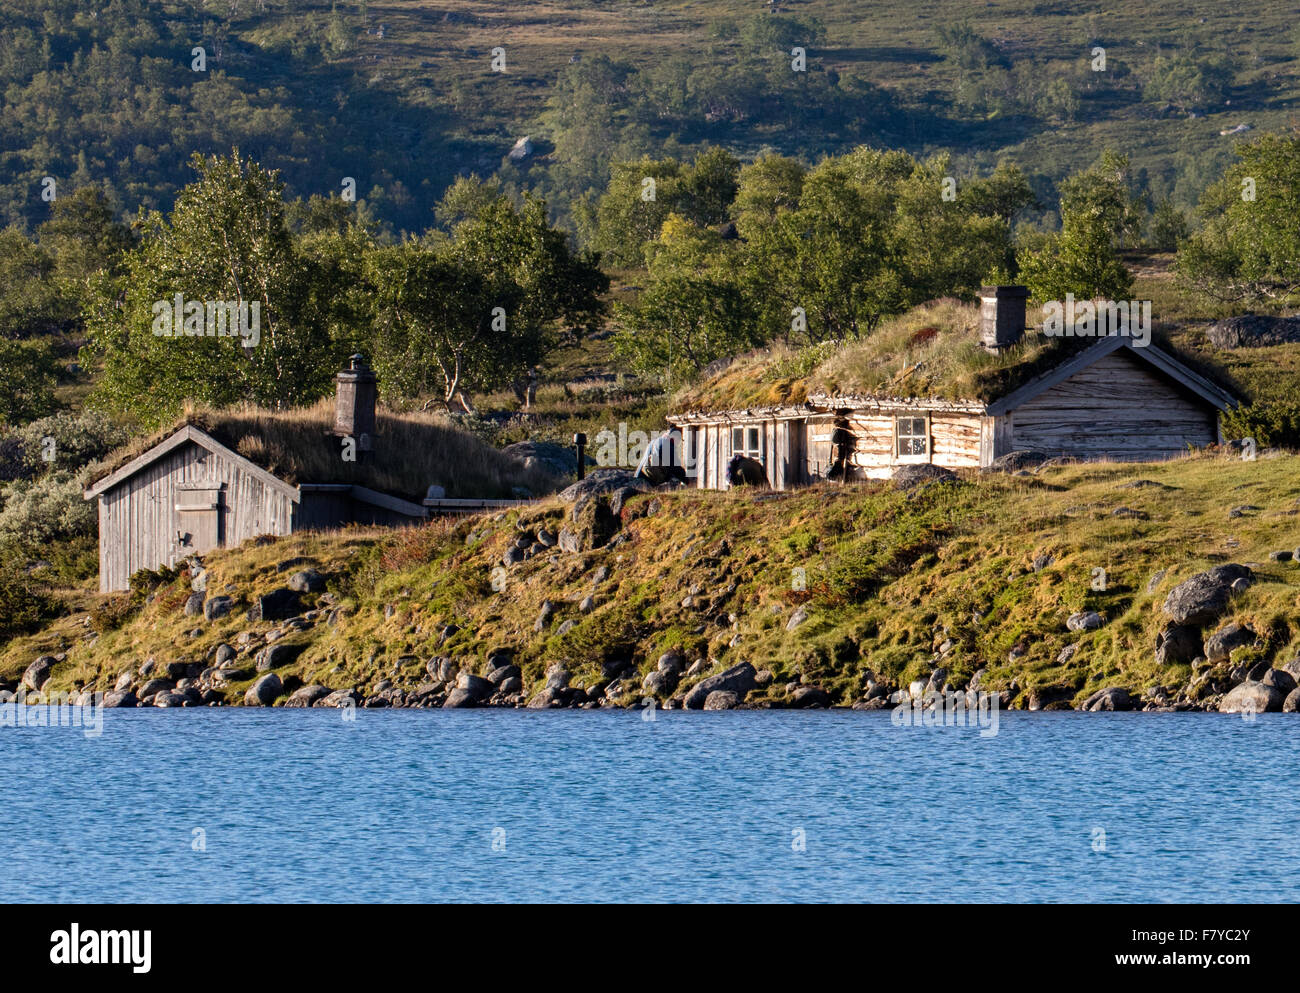 Cabines en bois anciens ou rorbuer avec l'herbe des toits sur les rives du lac Gjende dans le parc national de Jotunheimen Norvège Banque D'Images